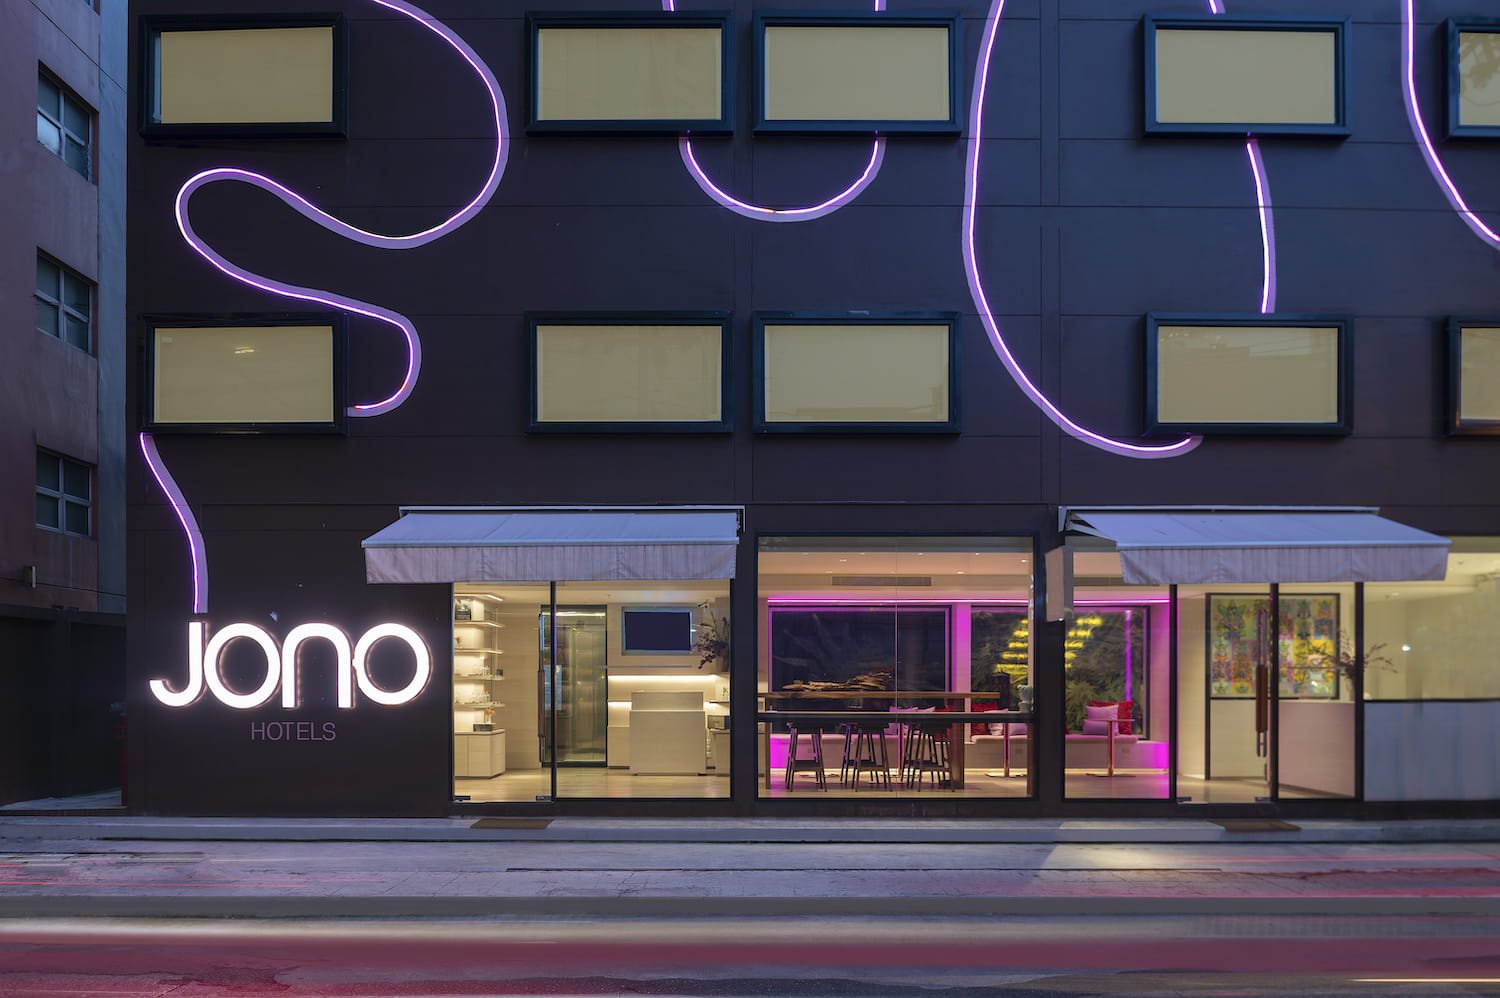 เปิดตัวแบรนด์ “Jono Hotels” ผุดโรงแรม 2 แห่งแรกในกรุงเทพฯ และภูเก็ต